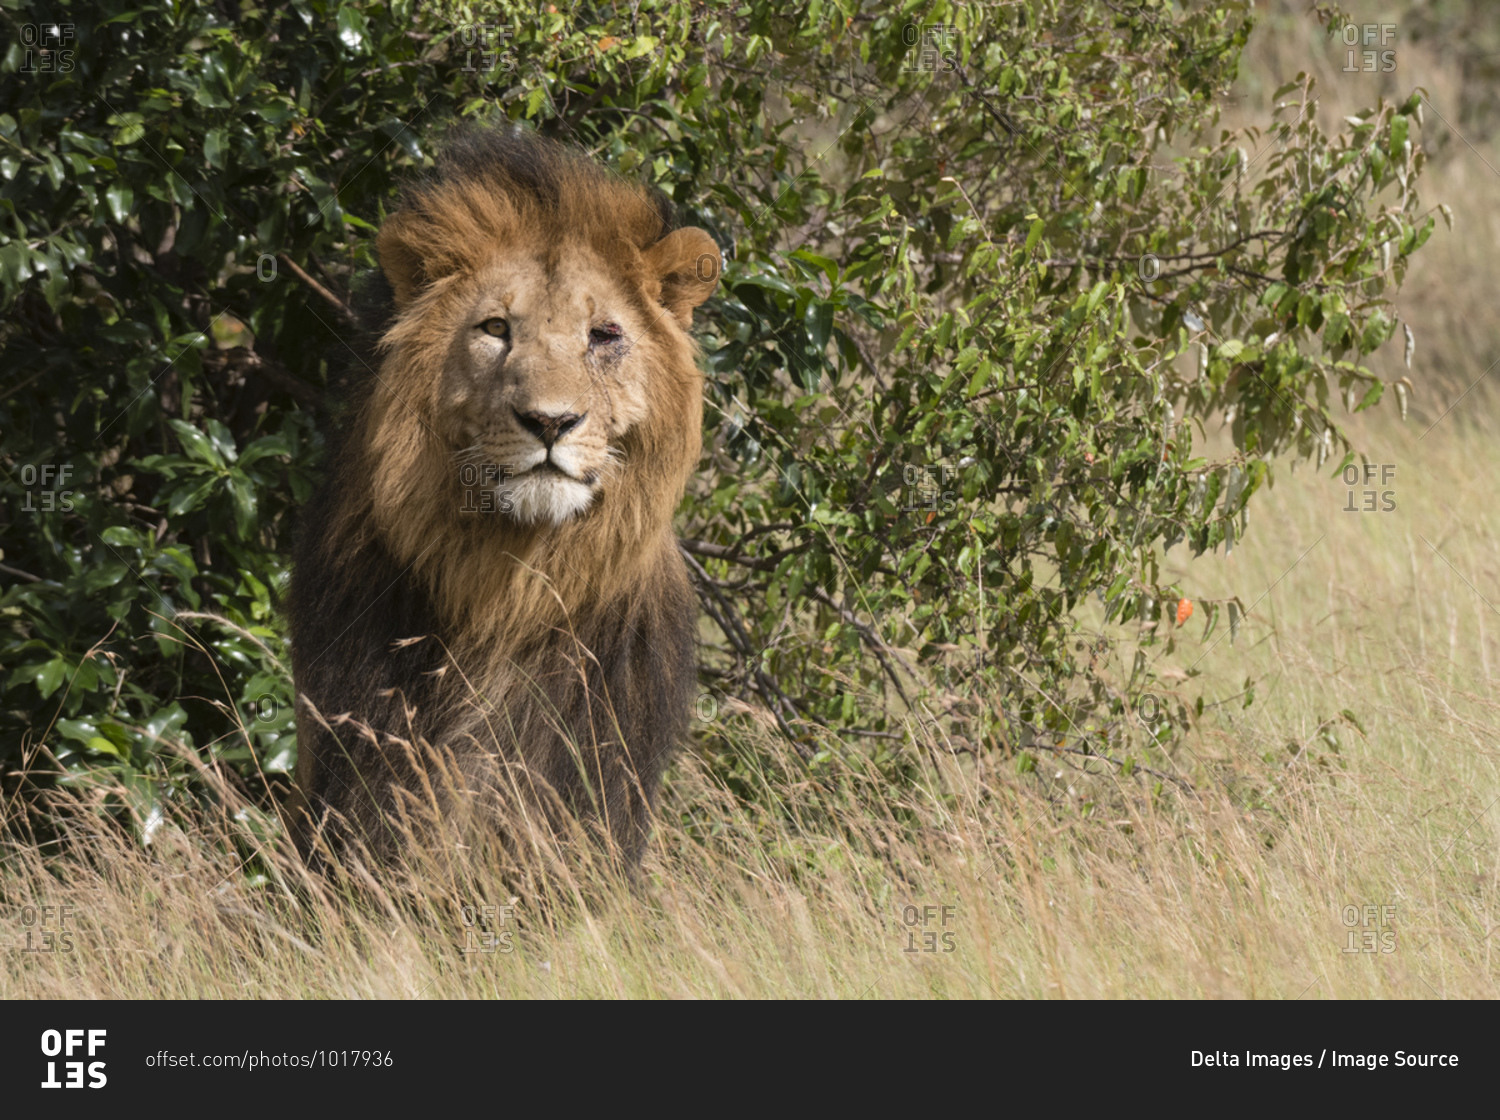 Portrait of male lion (Panthera Leo), Masai Mara National Reserve, Kenya